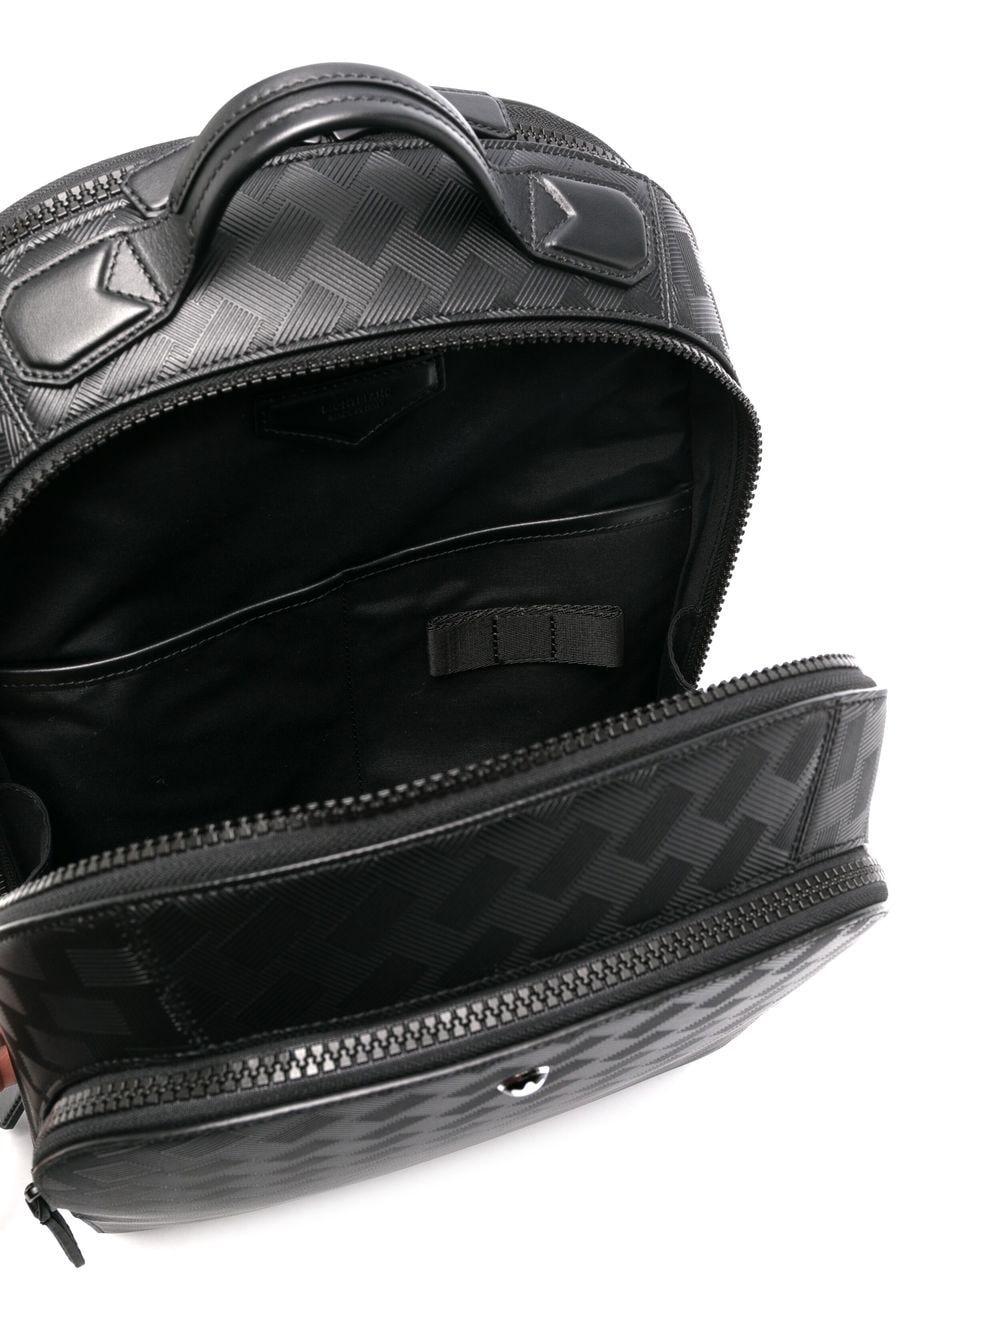 Montblanc Black Extreme 3.0 Large Backpack